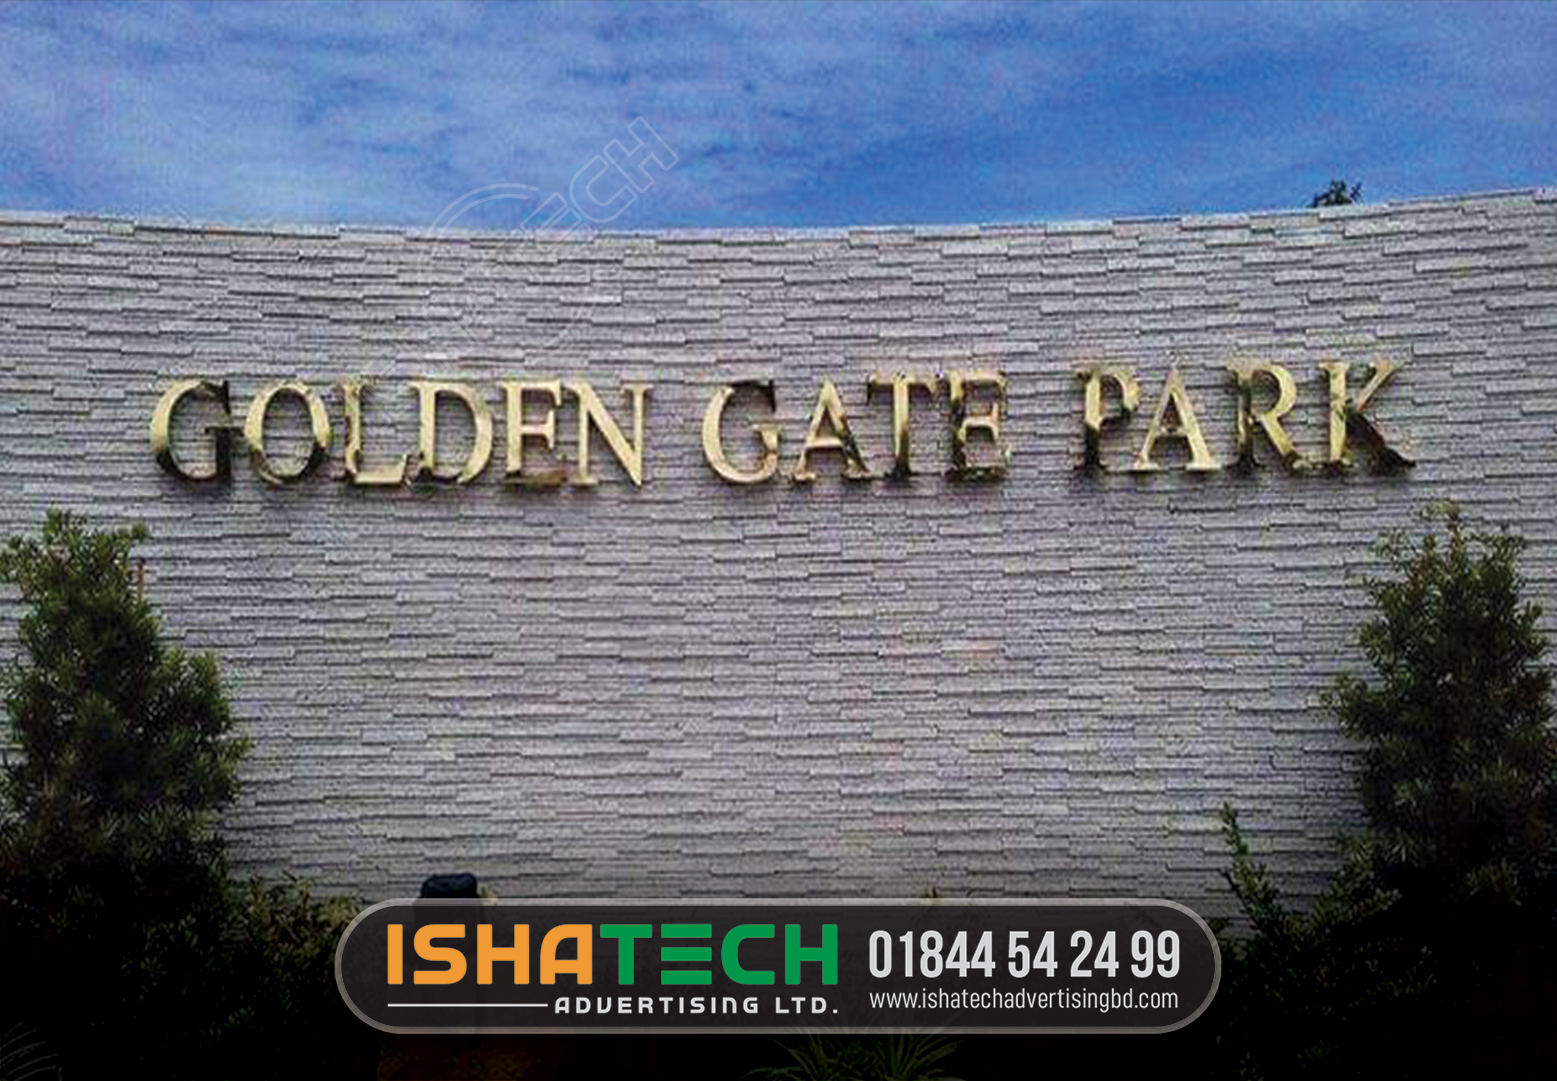 GOLDEN GATE PARK GOLDEN COLOR LETTER SIGNBOARD MAKING IN DHAKA BANGLADESH